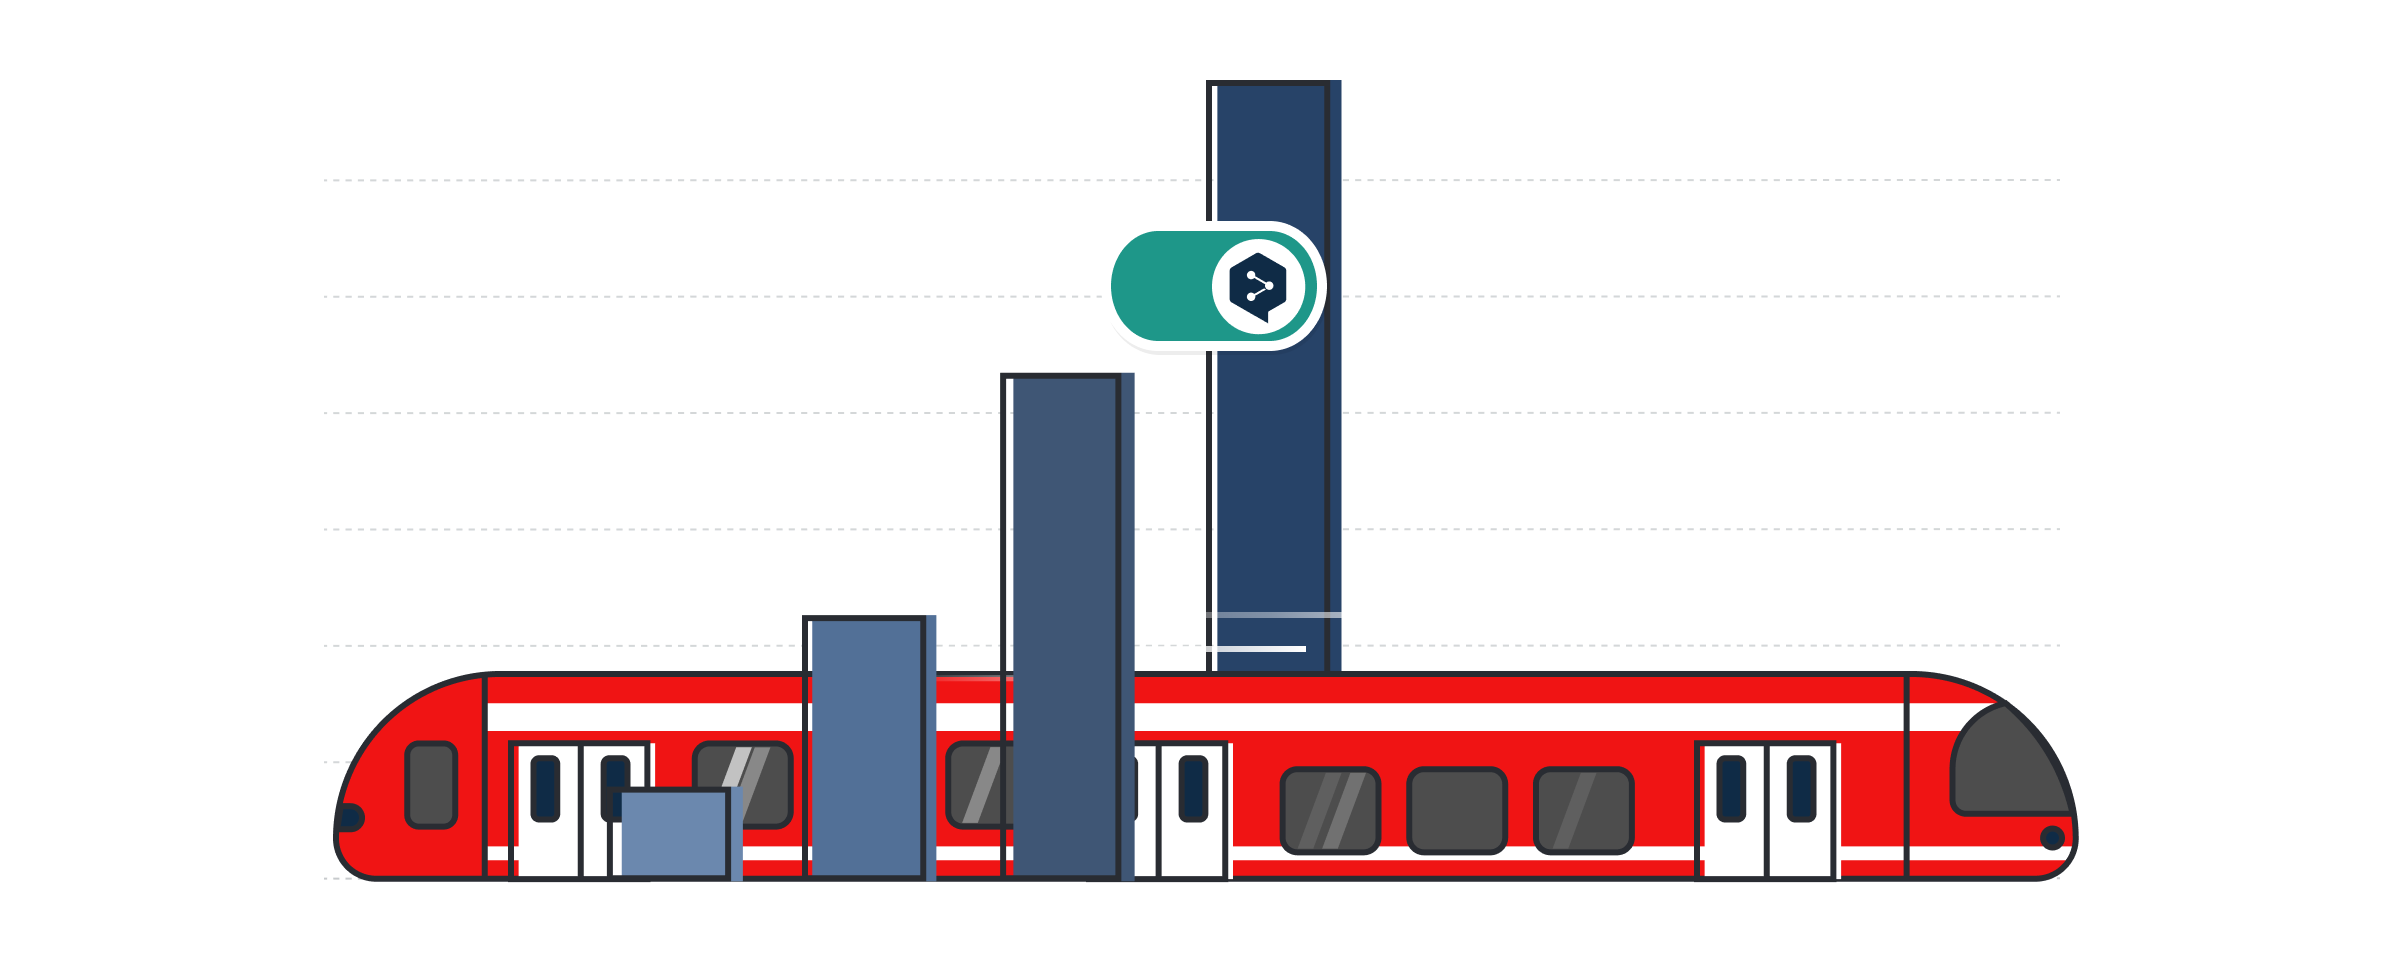 막대 그래프 상에 빨간색 DB 열차 및 DeepL Pro 로고가 표시된 이미지